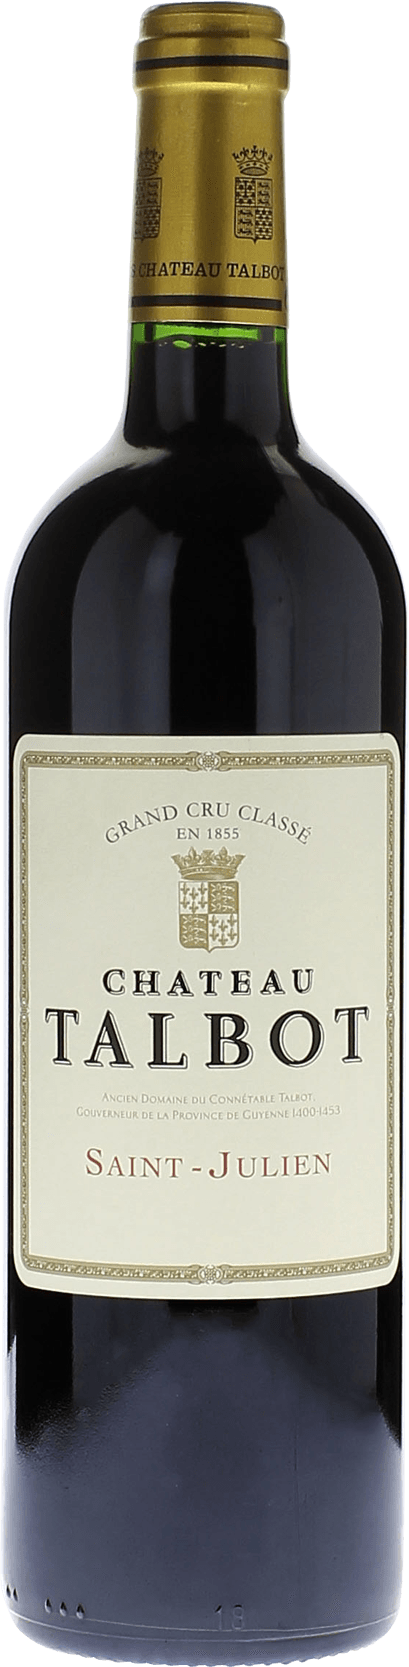 Talbot 1996 4me Grand cru class Saint-Julien, Bordeaux rouge